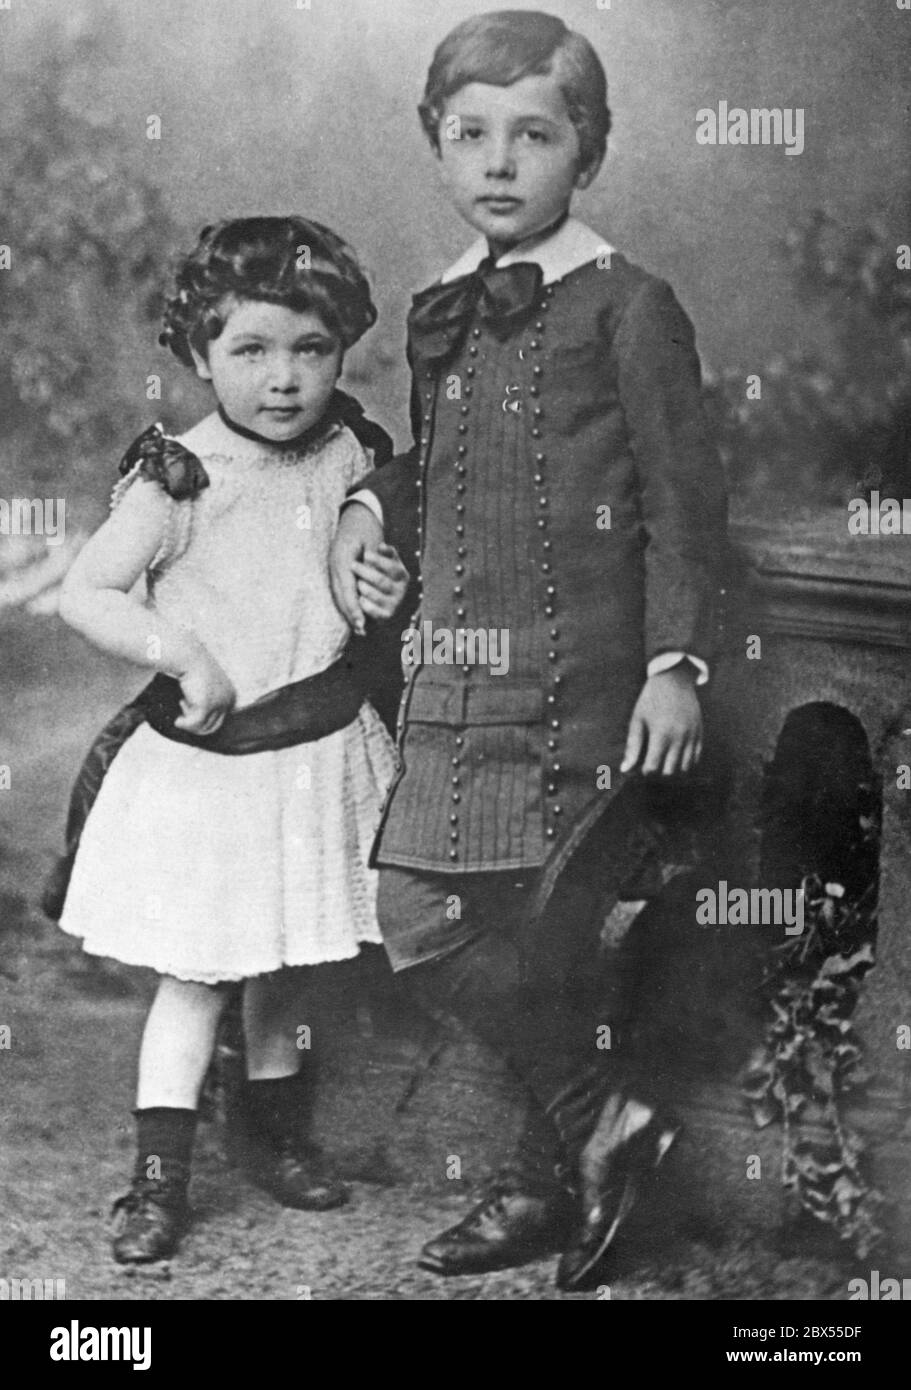 Albert Einstein with his little sister Maja. Stock Photo